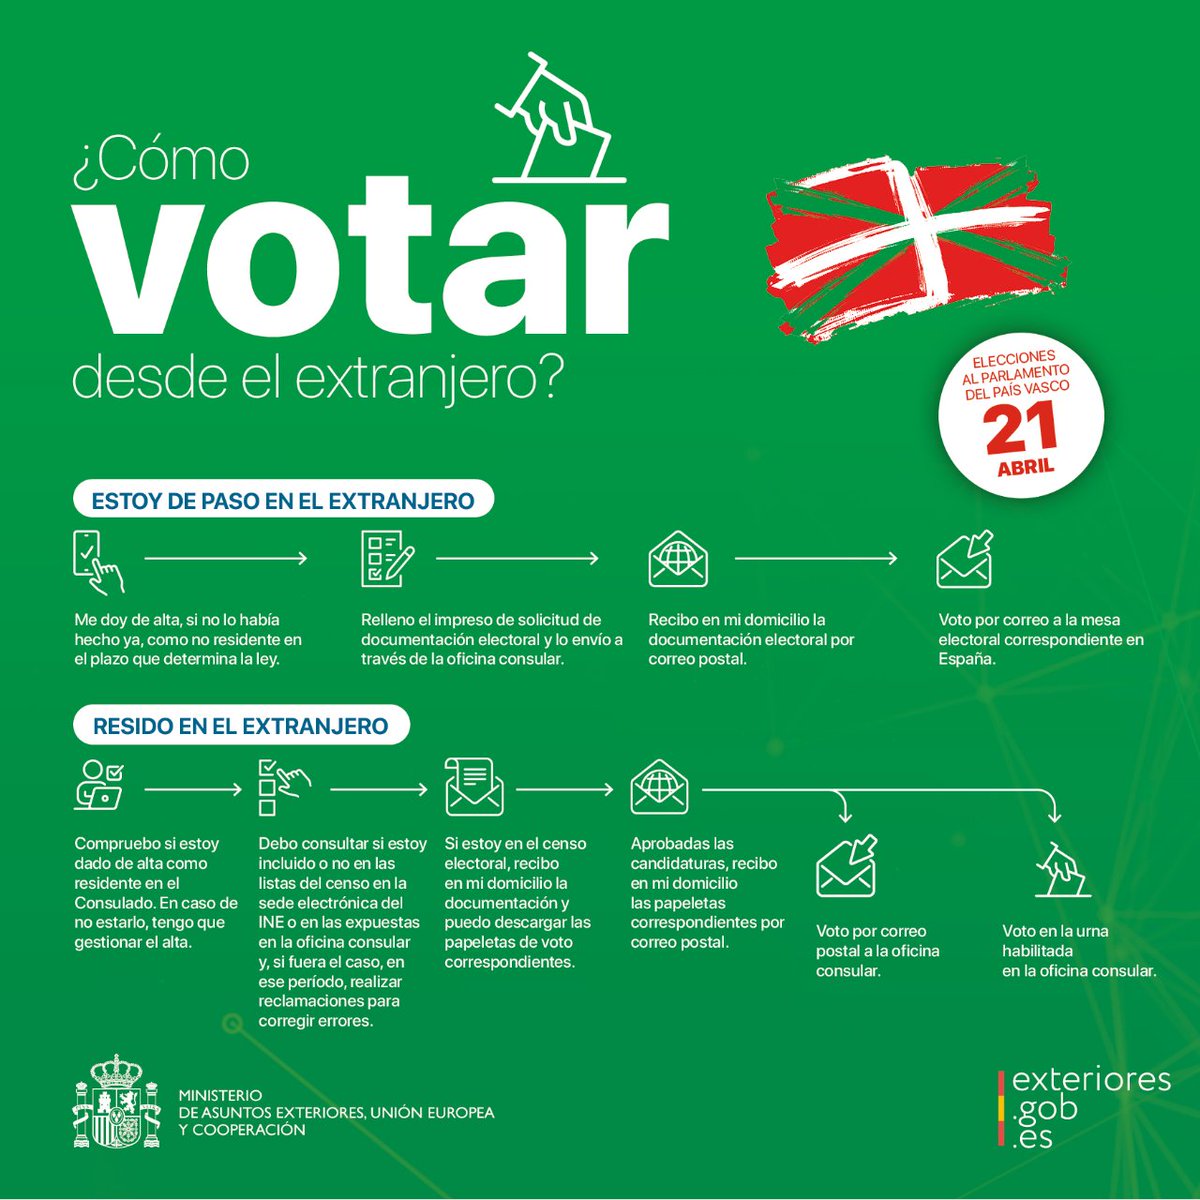 #VotoCERA: #TemporalmenteEnEspaña durante la convocatoria de #EleccionesAutonómicas #PaísVasco2024, puedes enviar tu #VotoPorCorreo en España igual que los residentes en territorio nacional.

Plazo para enviar el voto: hasta el 17 de abril.

Más ℹ️ en exteriores.gob.es/es/Paginas/Ele…